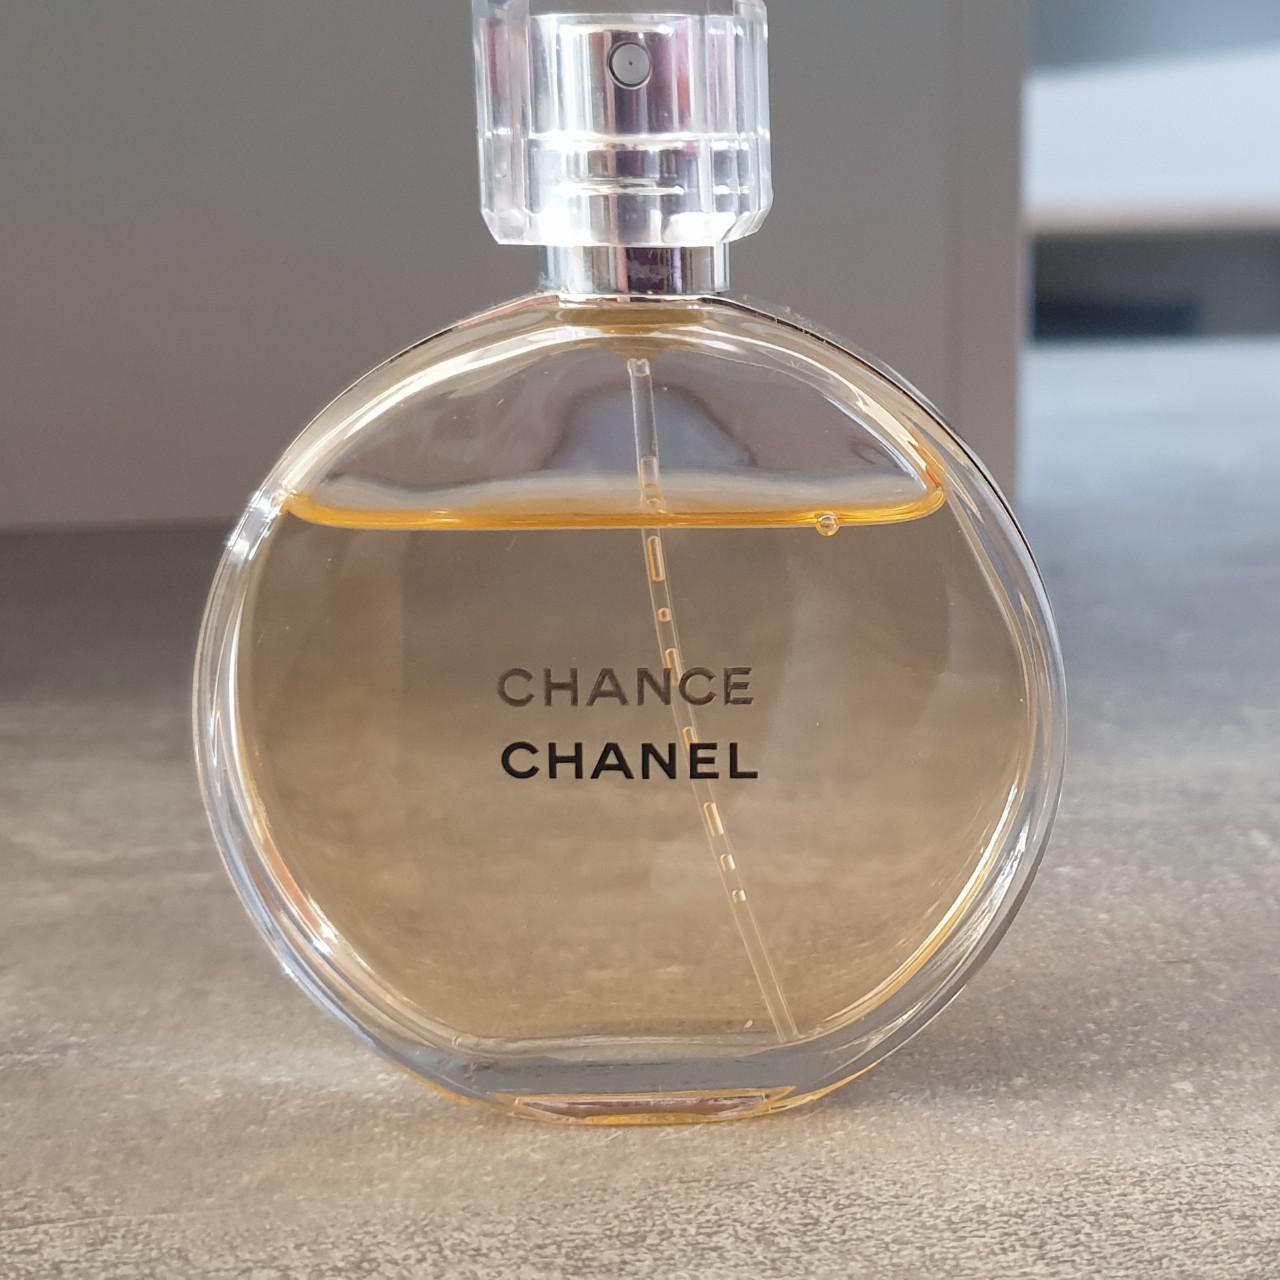 Chanel chance eau de toilette spray 50ml. A floral... - Depop